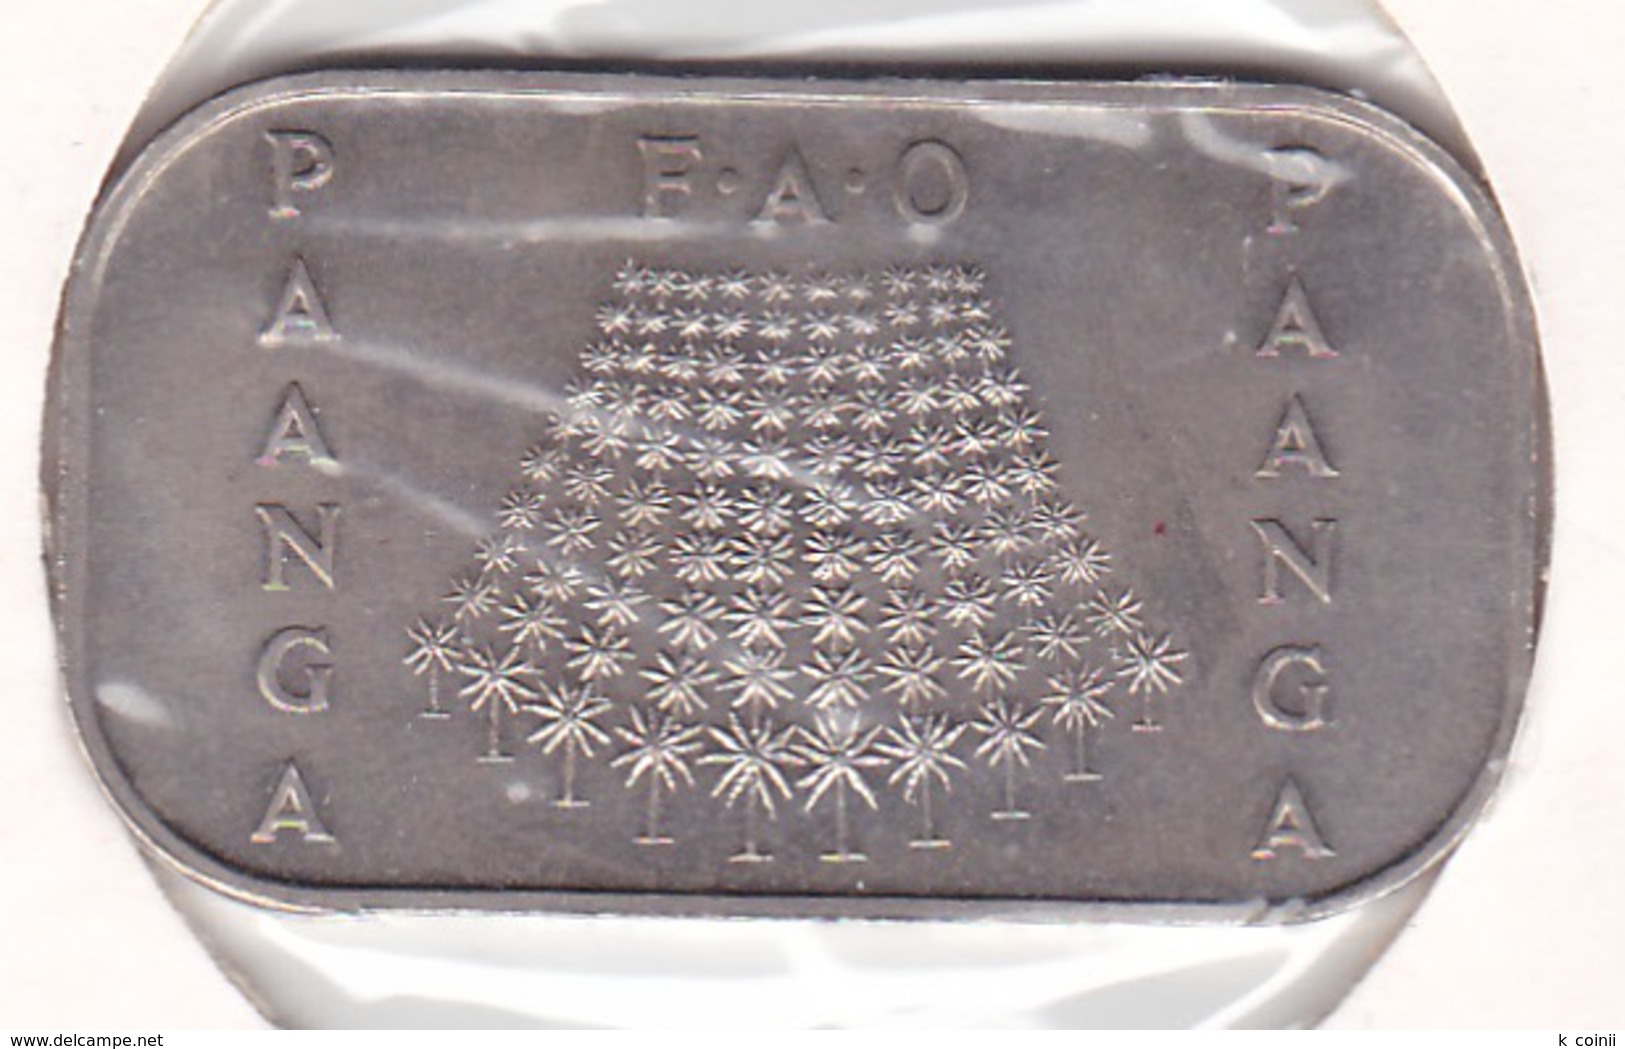 Tonga 1 Pa'anga 1978 FAO - UNC - Tonga